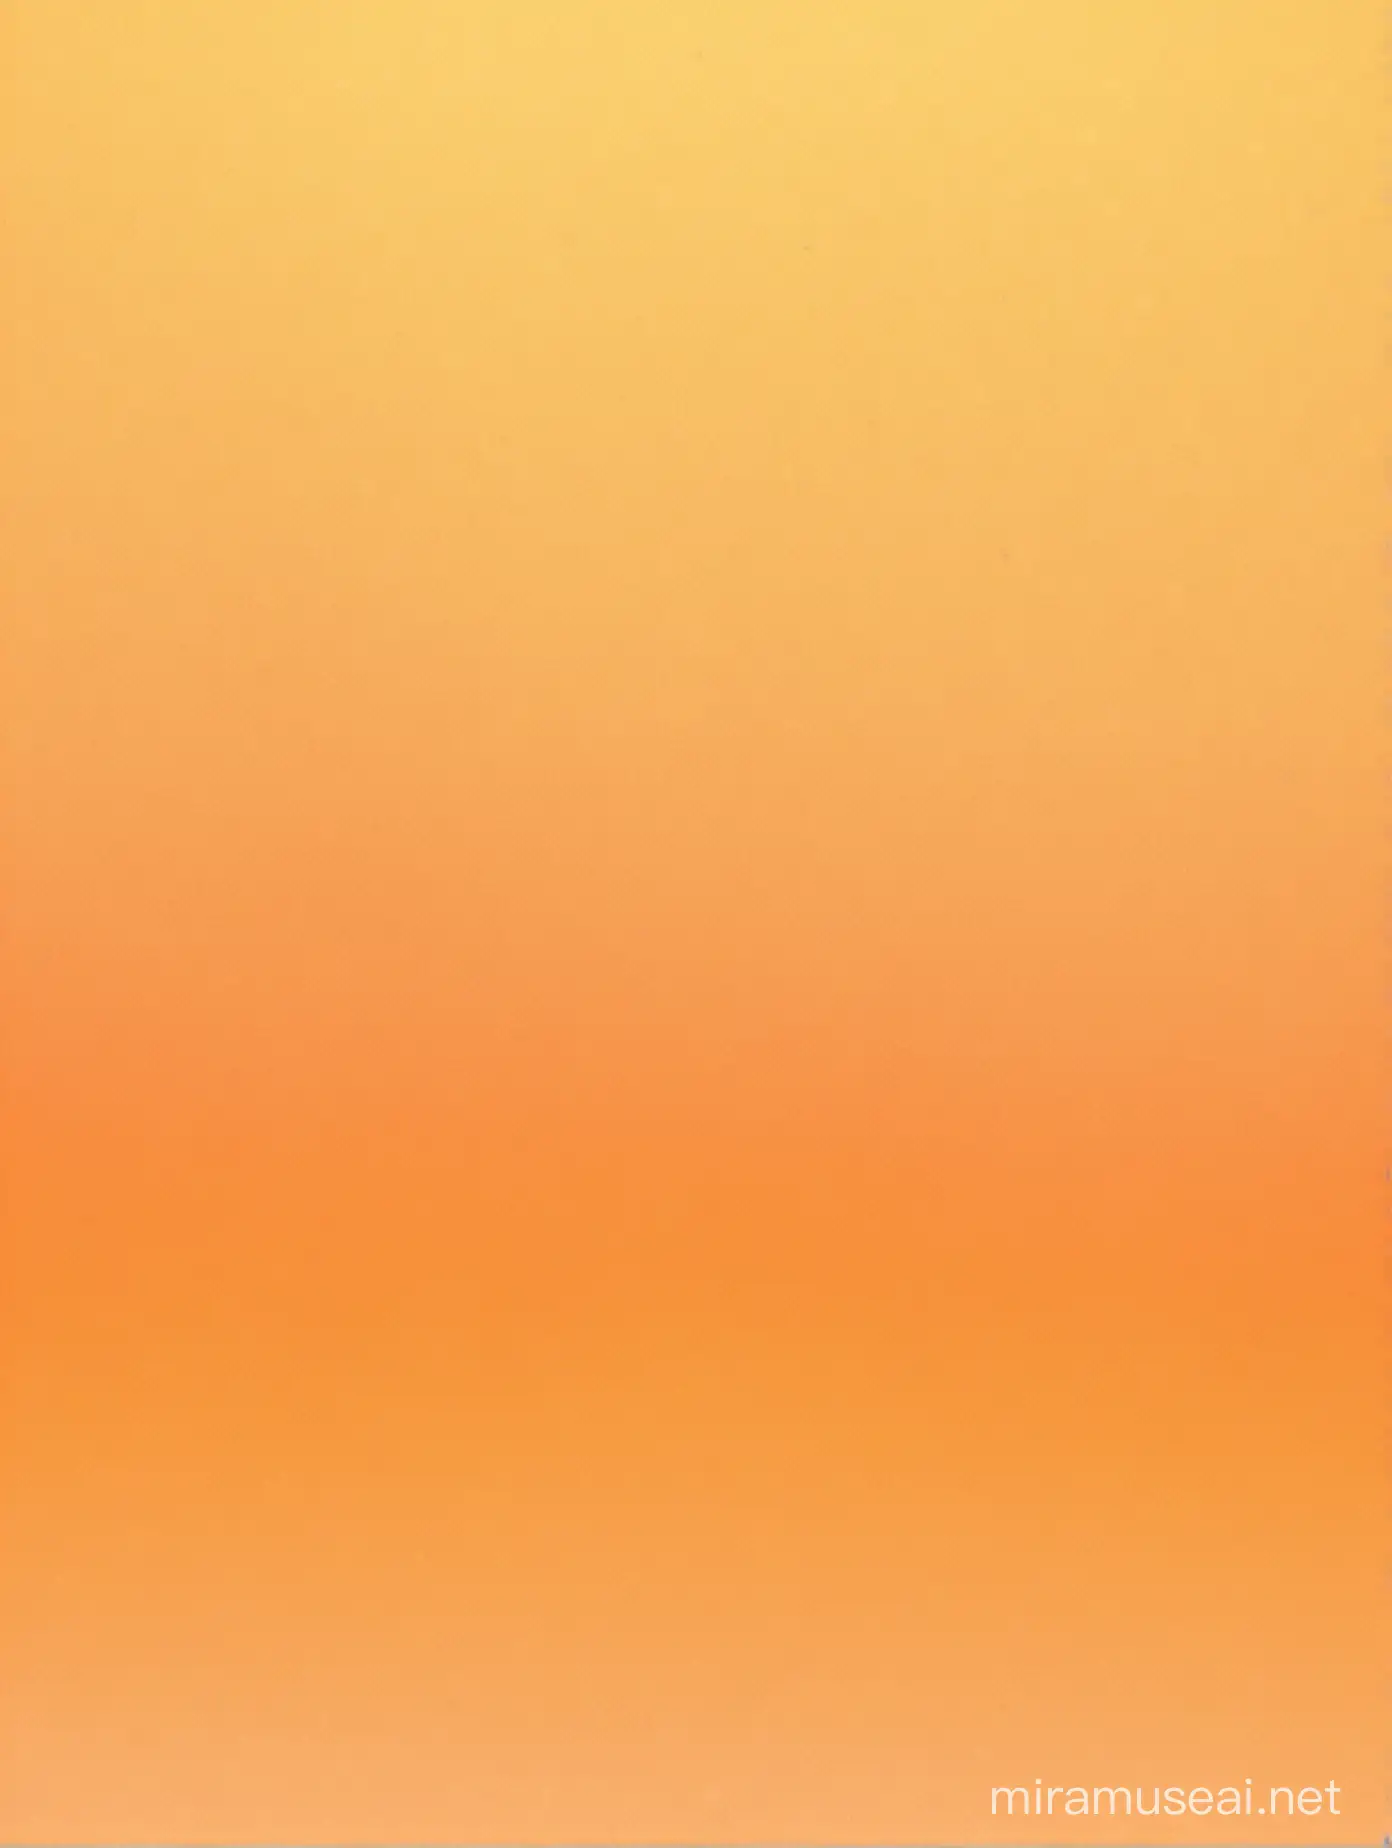 Vibrant Orange and Yellow Gradient Background